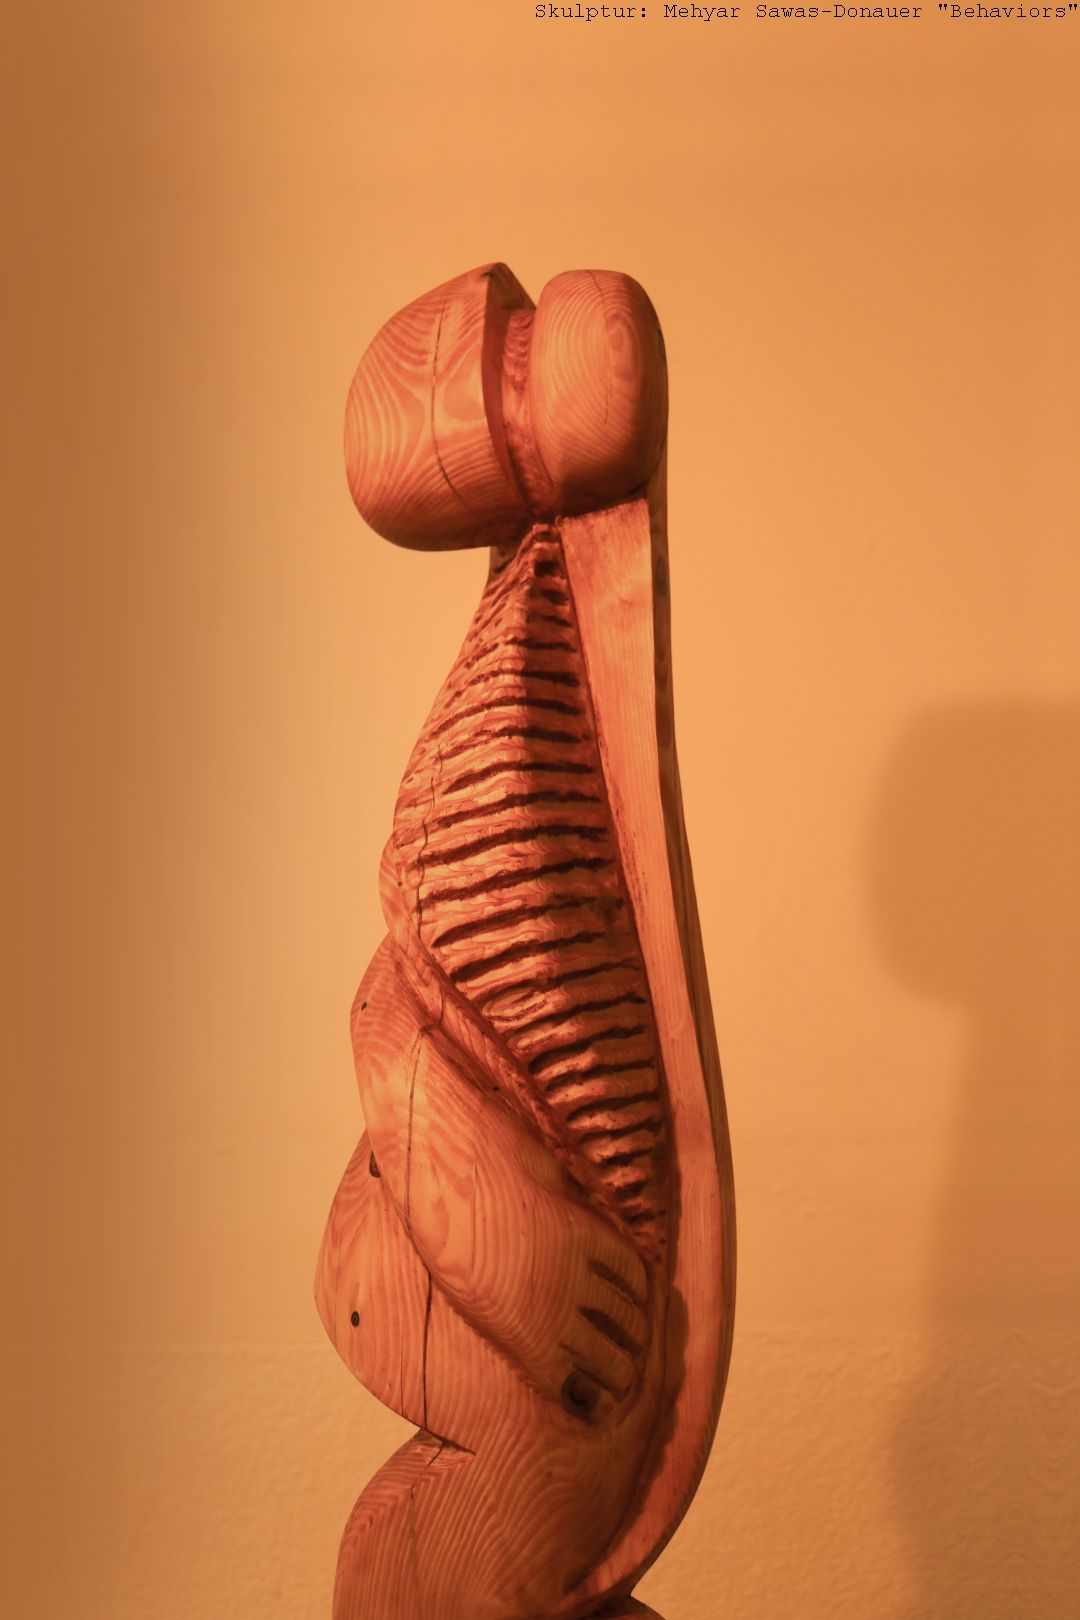 Hier wird ein Bild Mehyar Sawas-Donauers Skulptur "Behaviors" gezeigt.